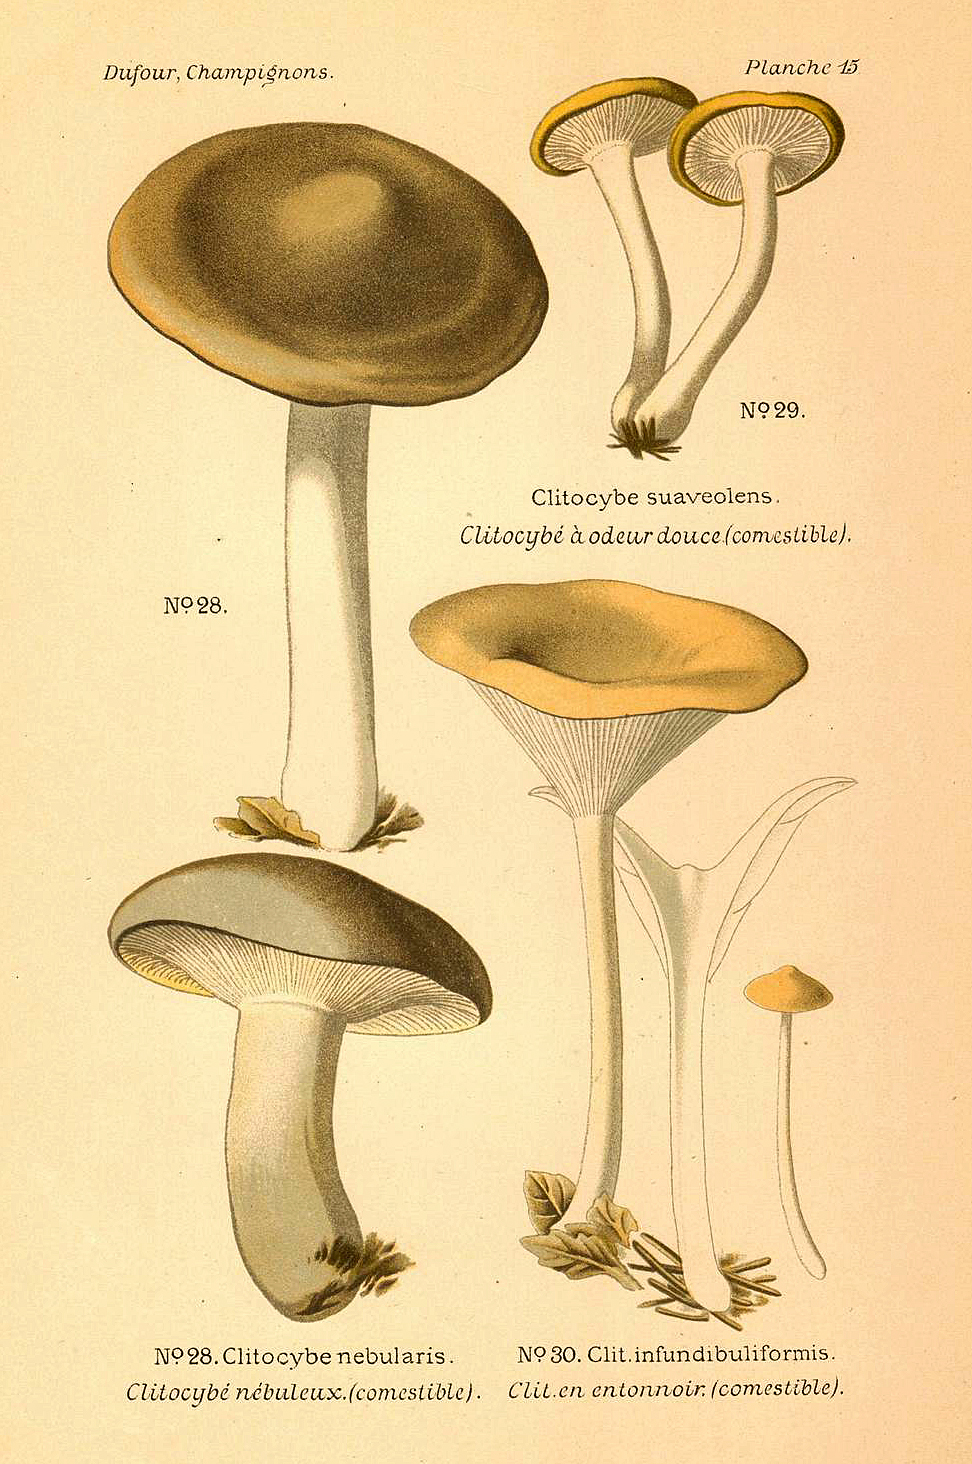 Planche de mycologie de Léon Marie Dufour n° 15.